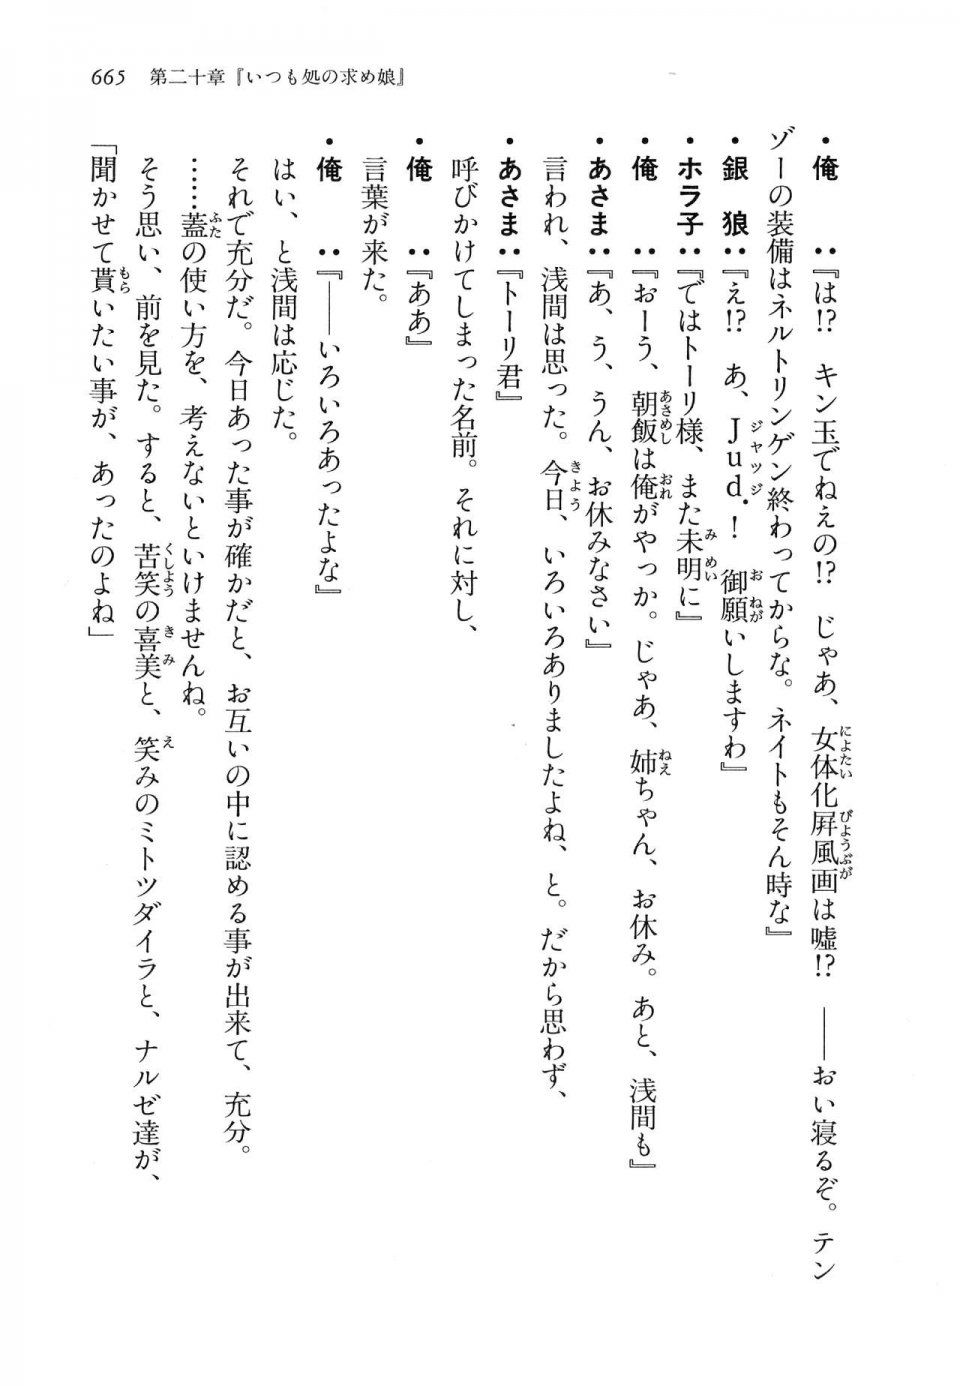 Kyoukai Senjou no Horizon LN Vol 16(7A) - Photo #665